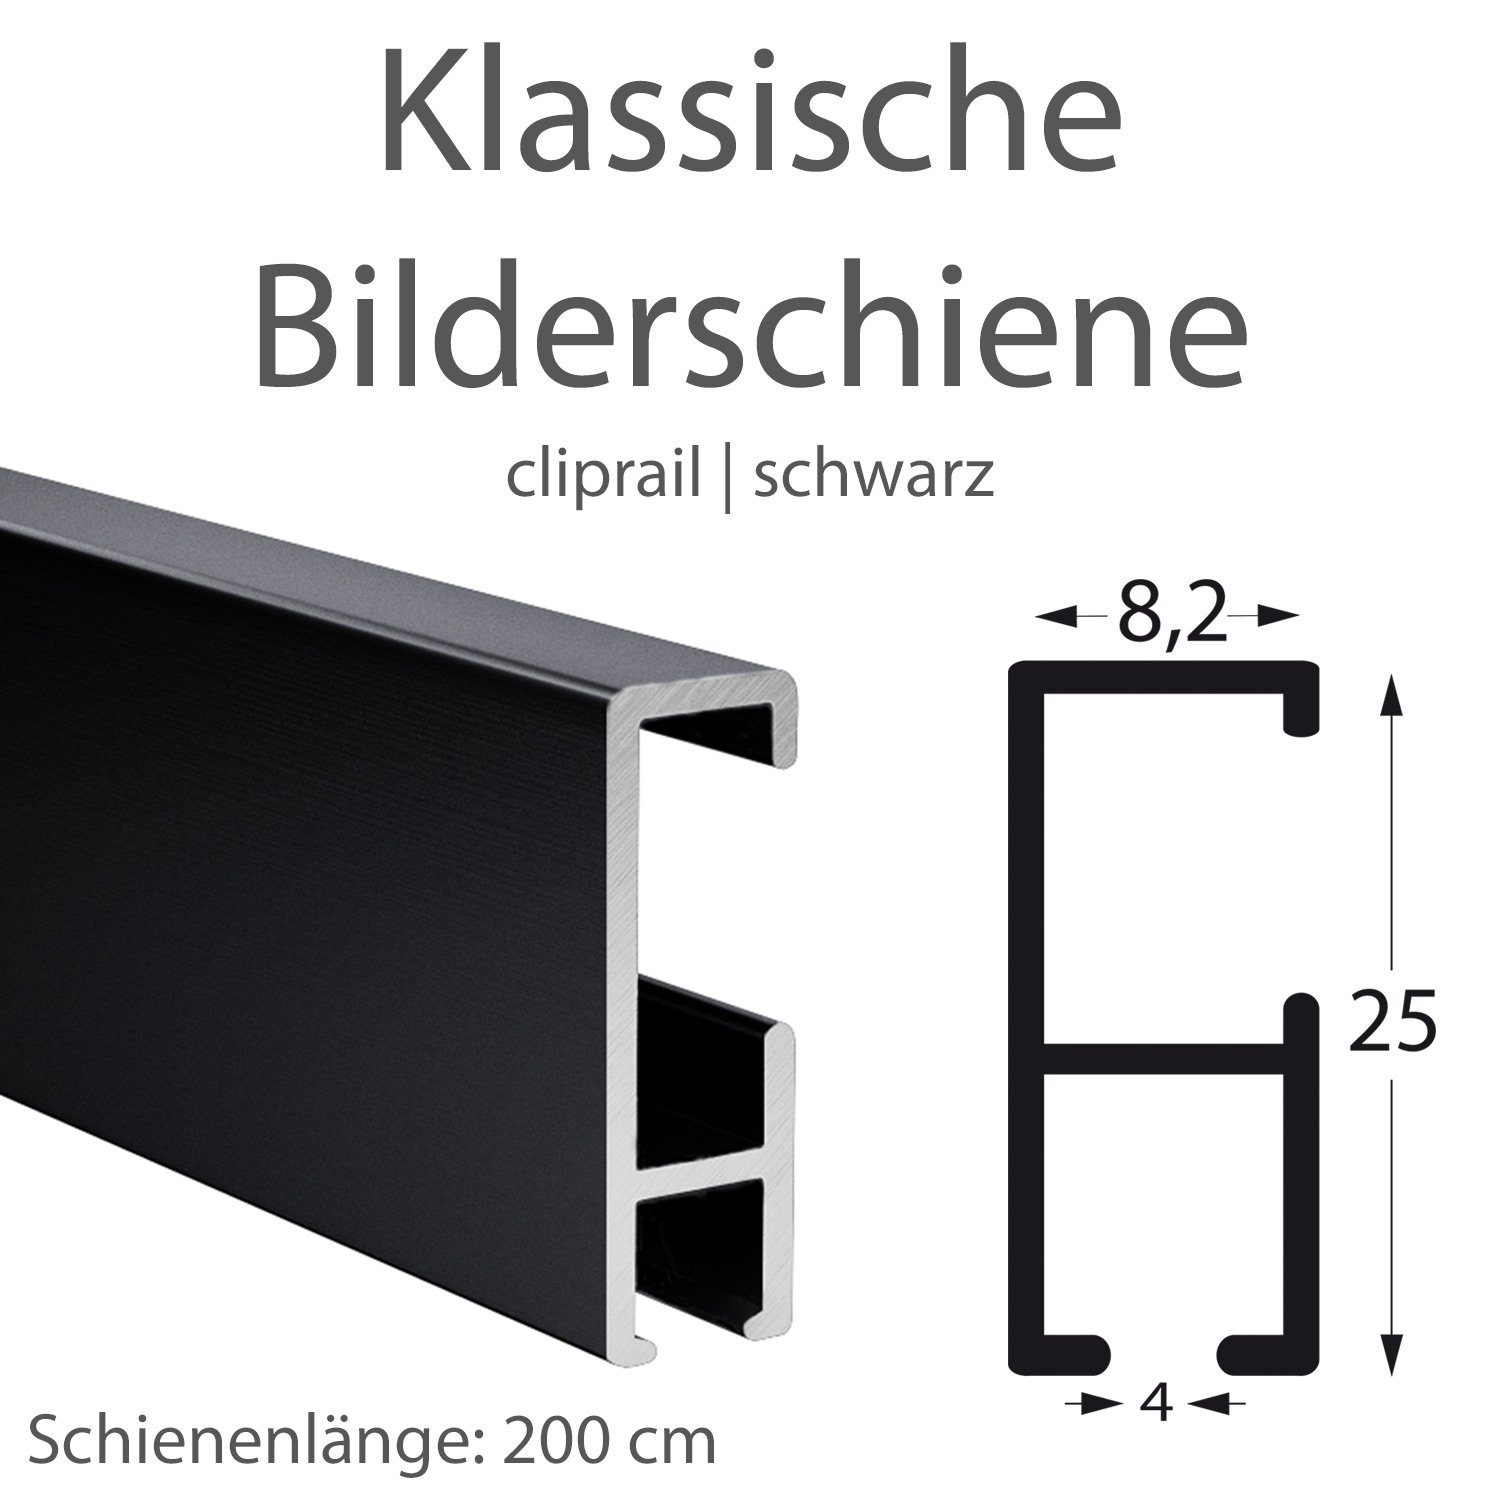 STRÜSSMANN® cliprail, Komplett-Set schwarz - Bilderschienen Wandregal Wandschienen schwarz